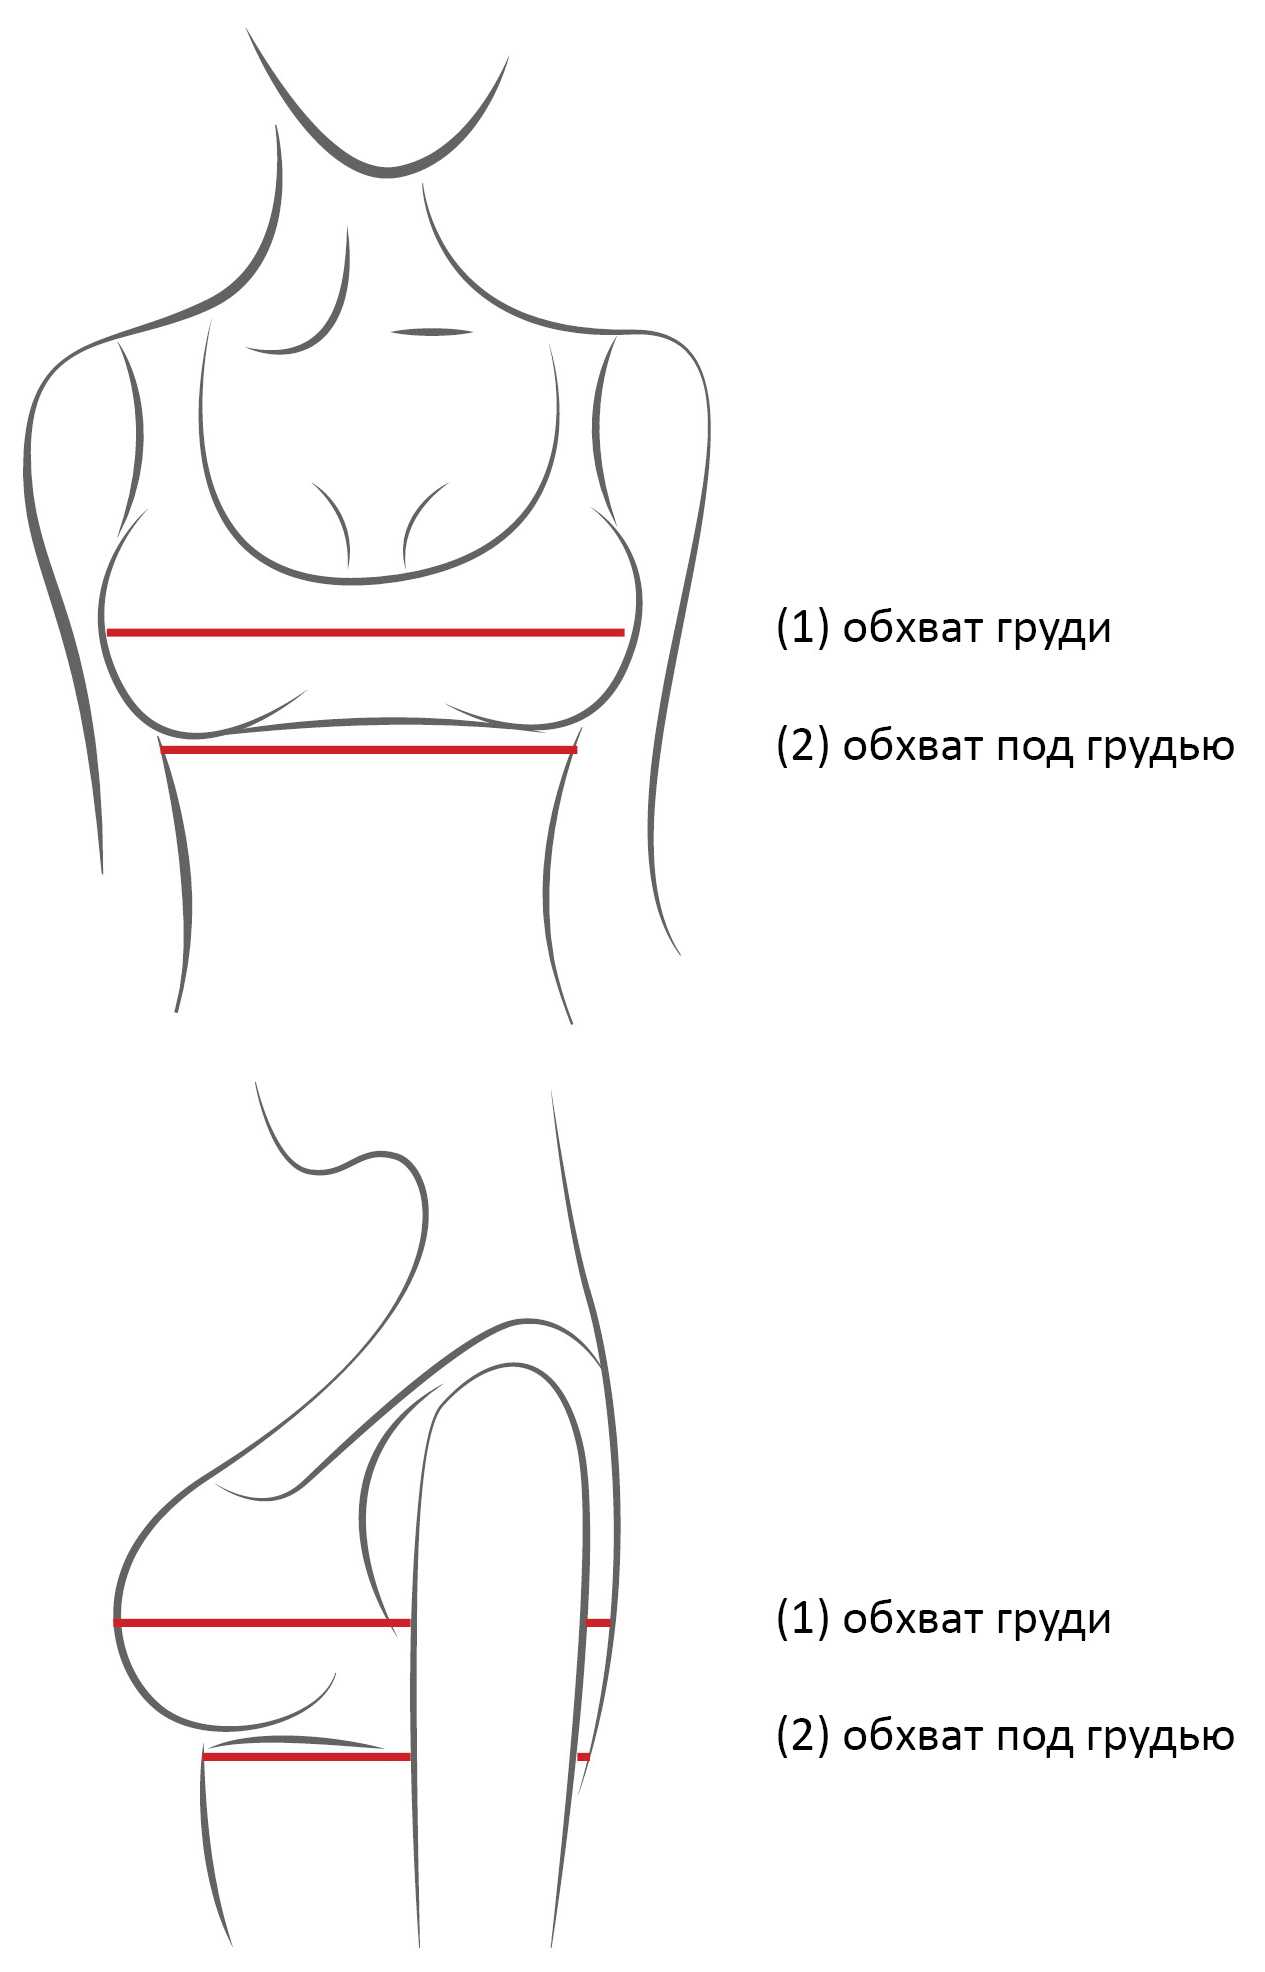 как правильно мерить обхват груди у женщин фото 4